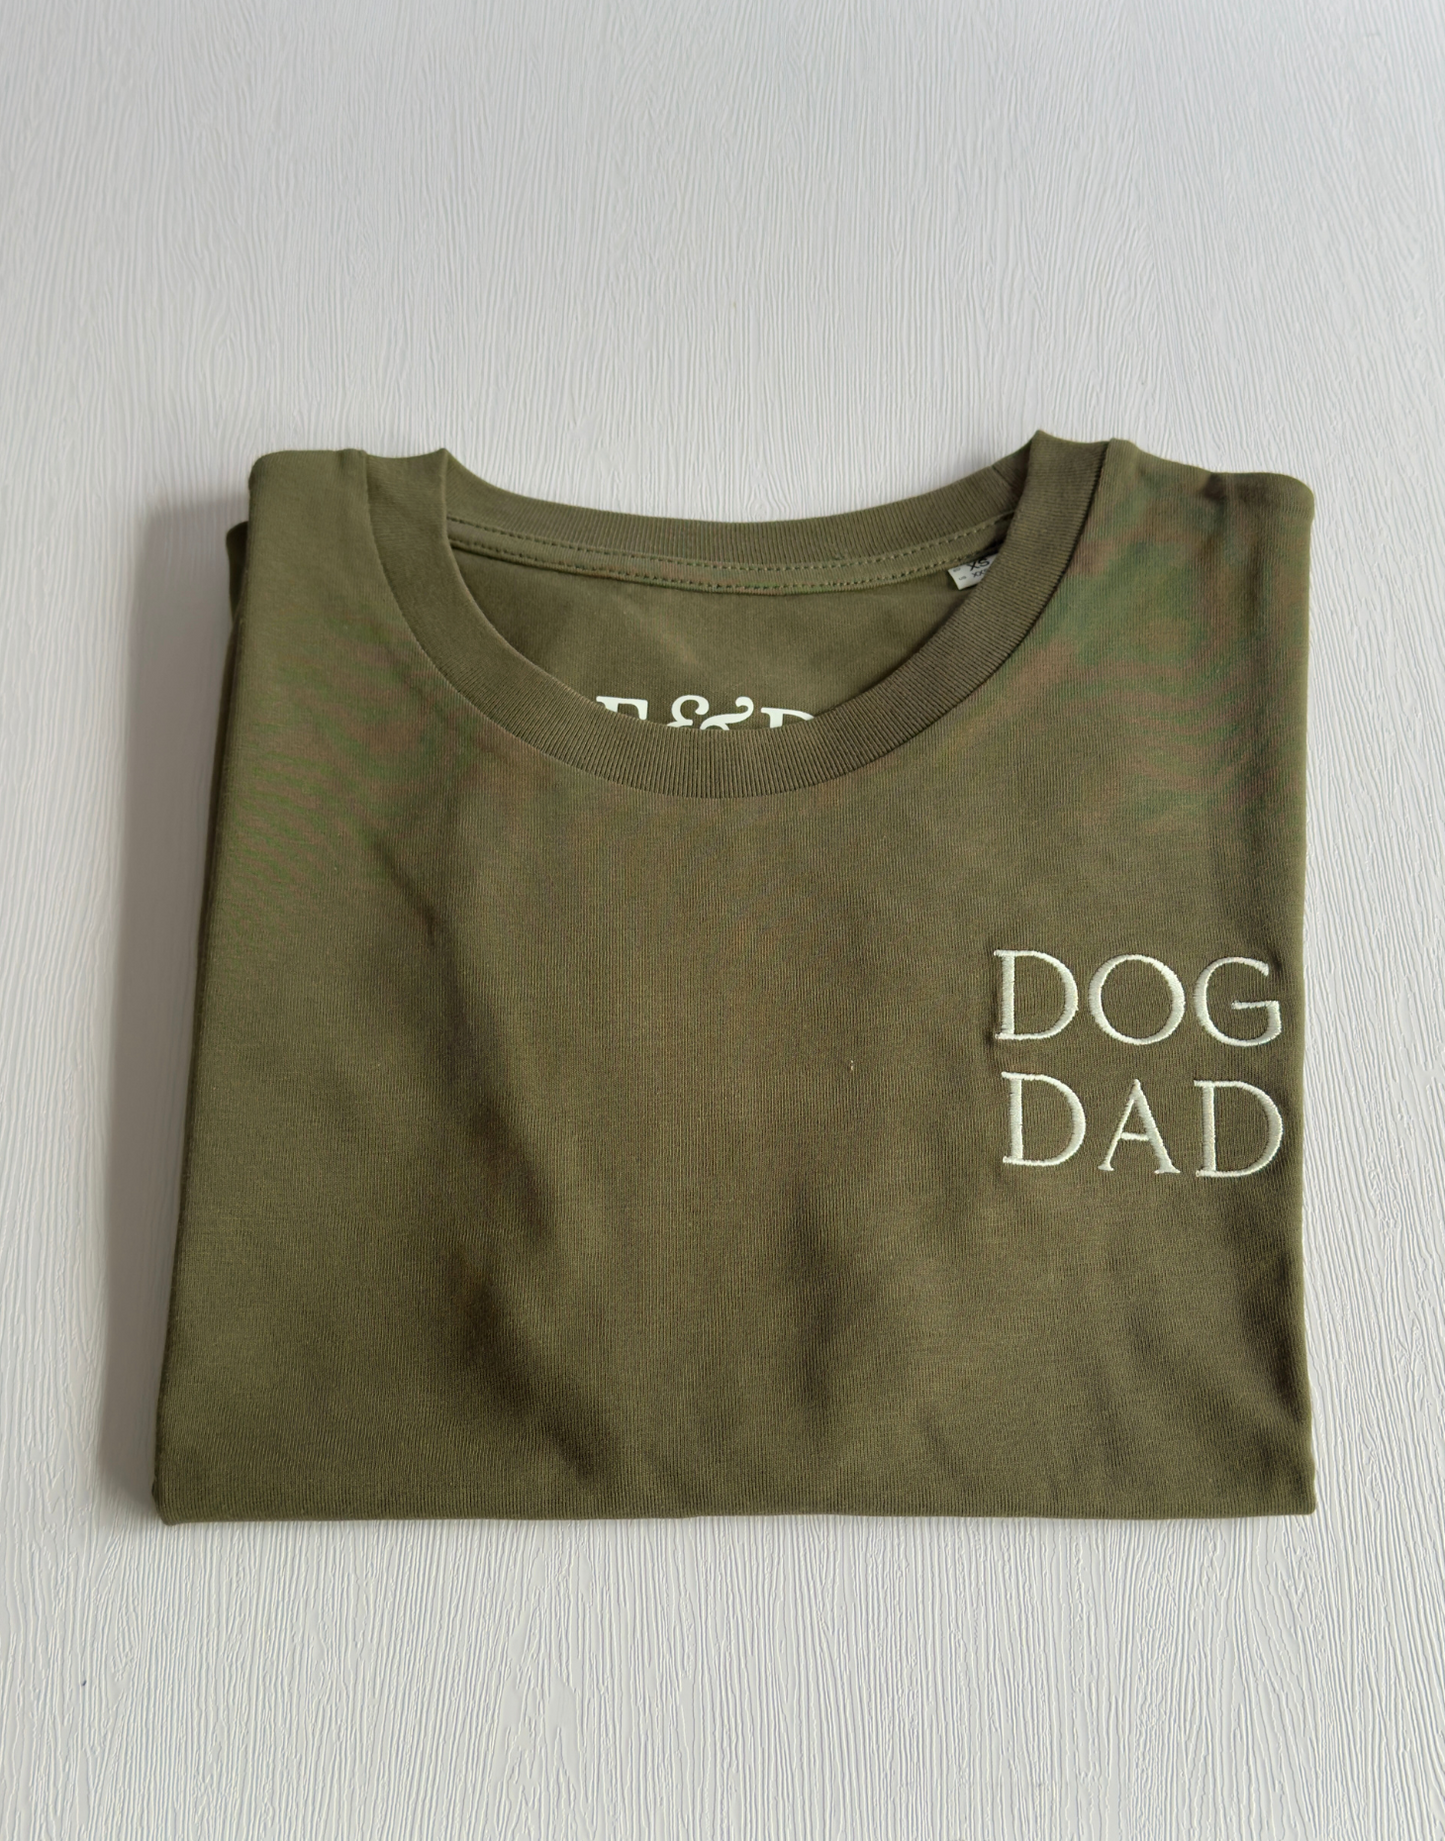 Dog Dad Tee